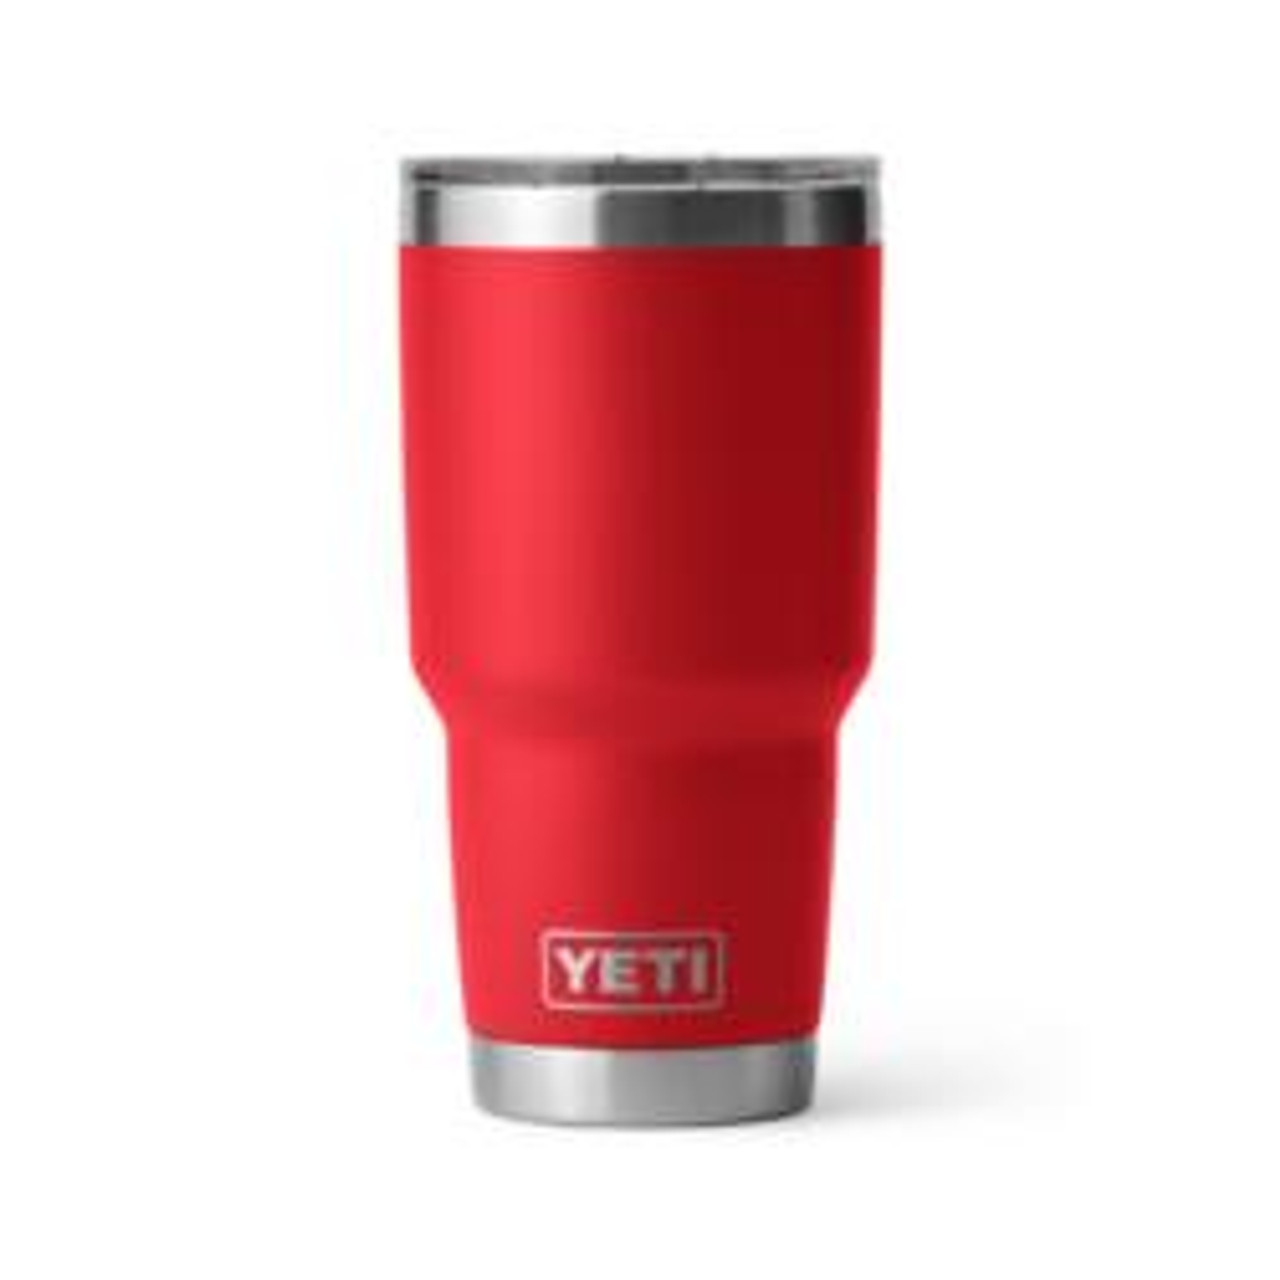 New 8oz (263mls) Yeti cups @trailblazersalbany @yeti_au